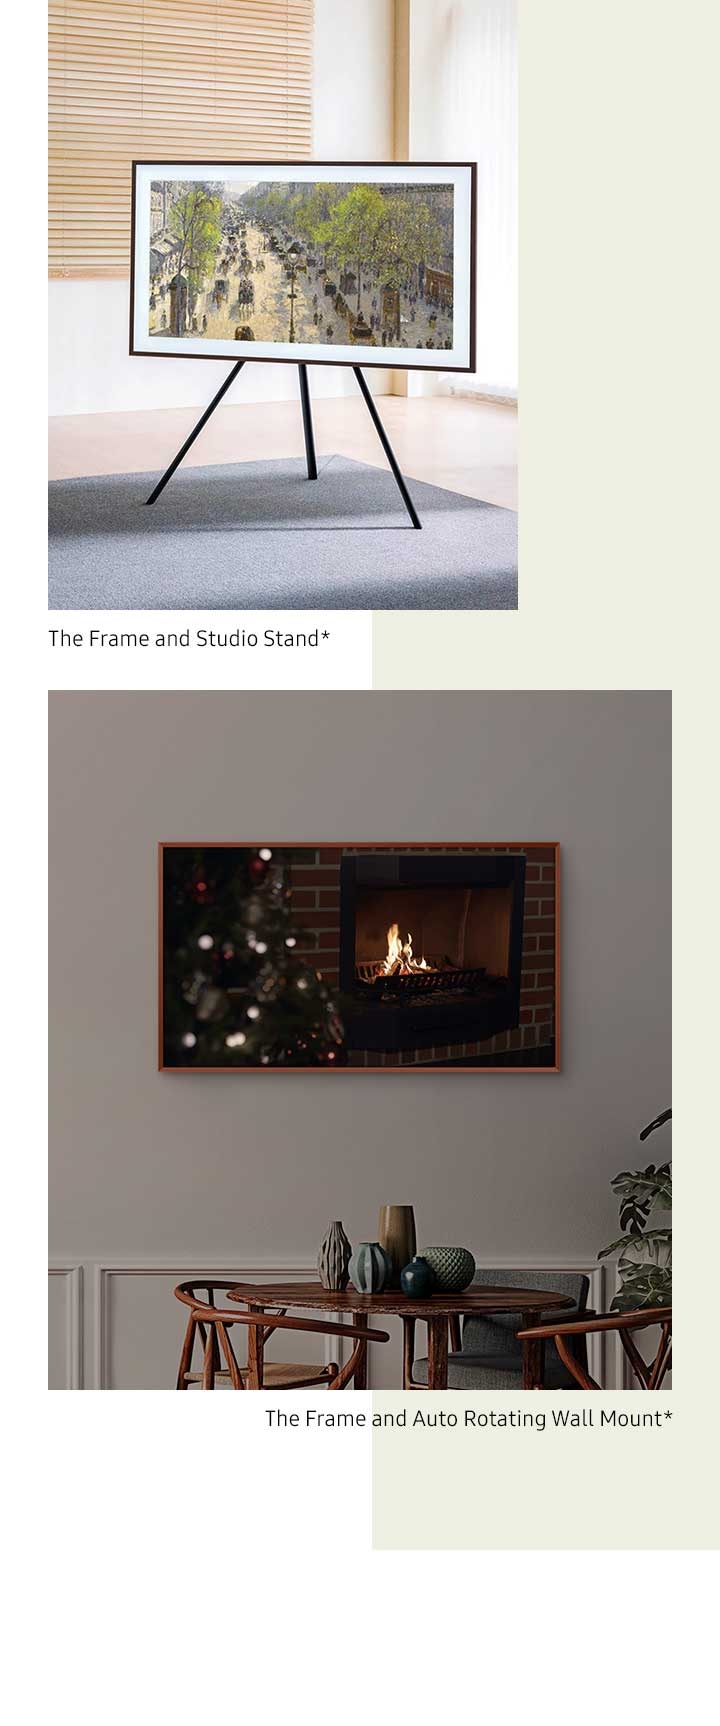 The Frame поставен на држач што автоматски се ротира од режим на пејзаж во портрет режим*. The Frame е монтиран на држач Studio Stand*.